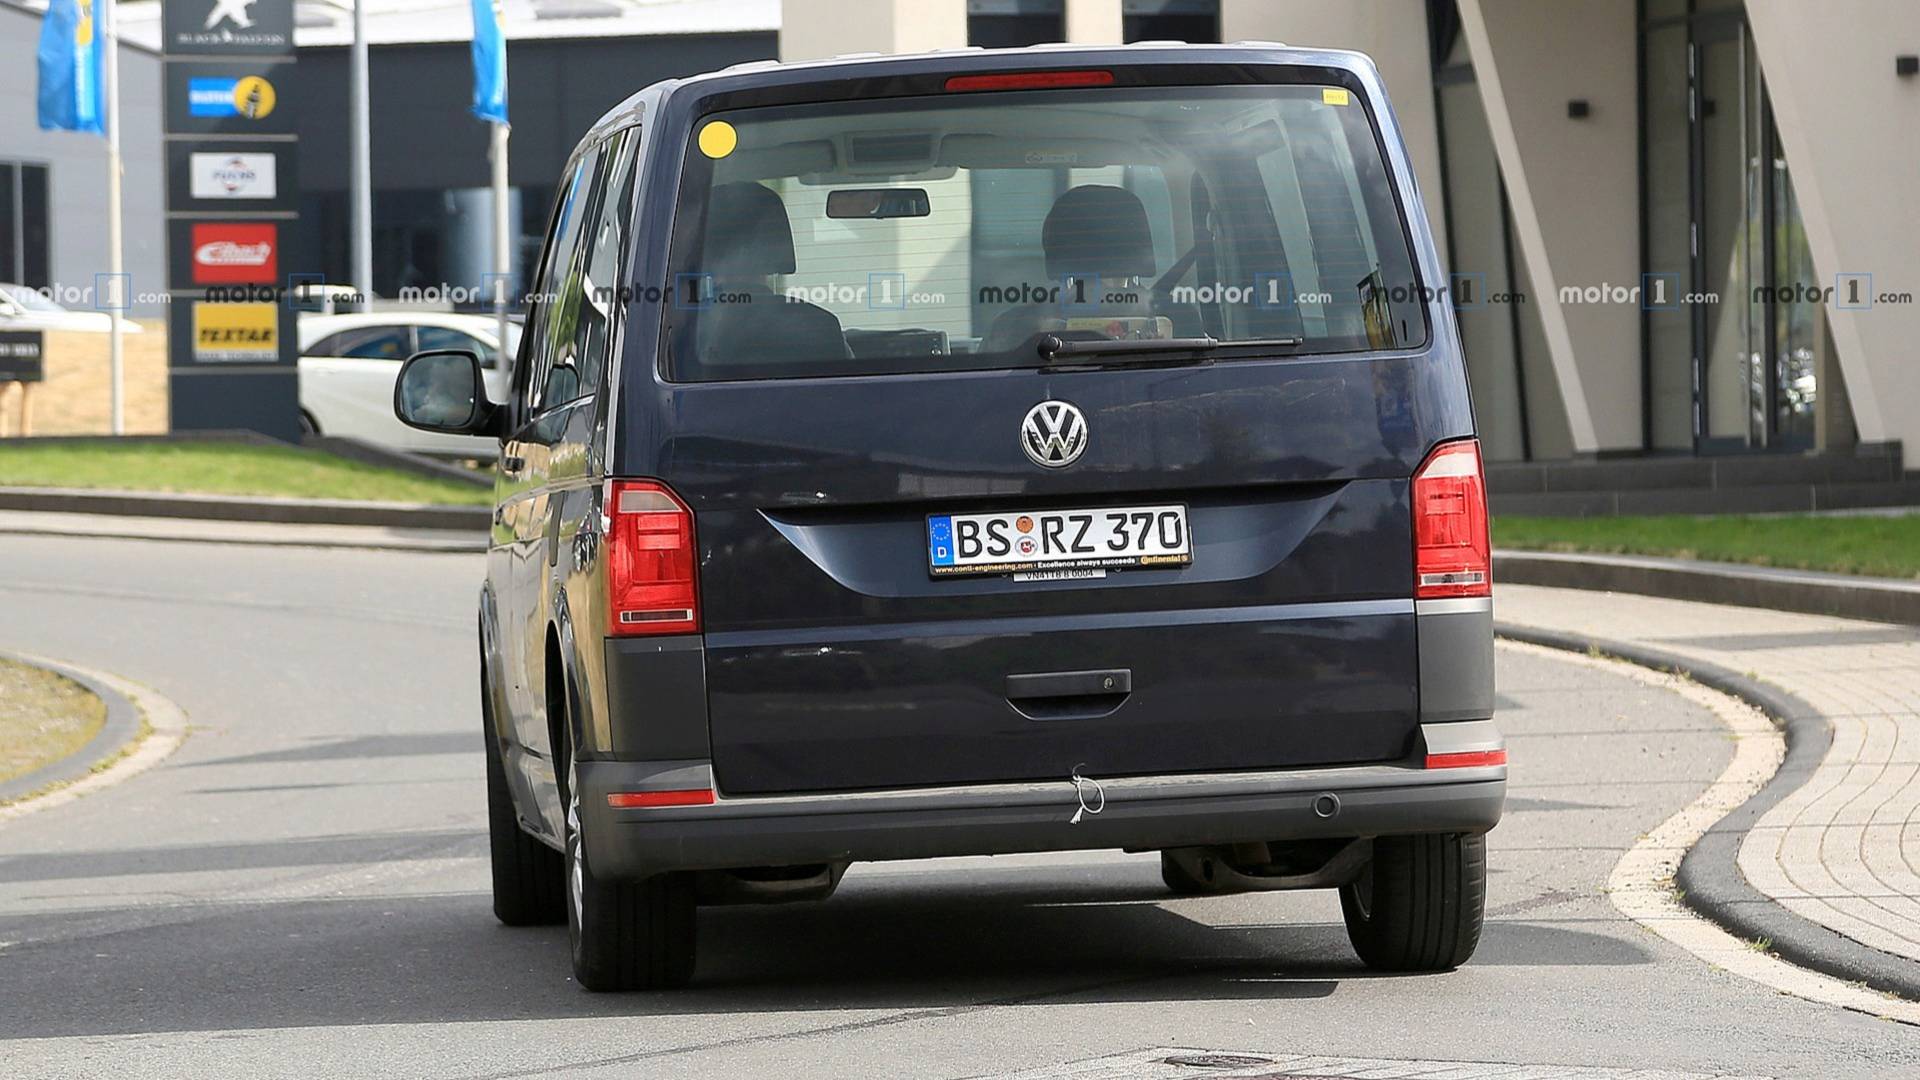 Под внешностью Volkswagen T6 скрывается гибридный фургон нового поколения